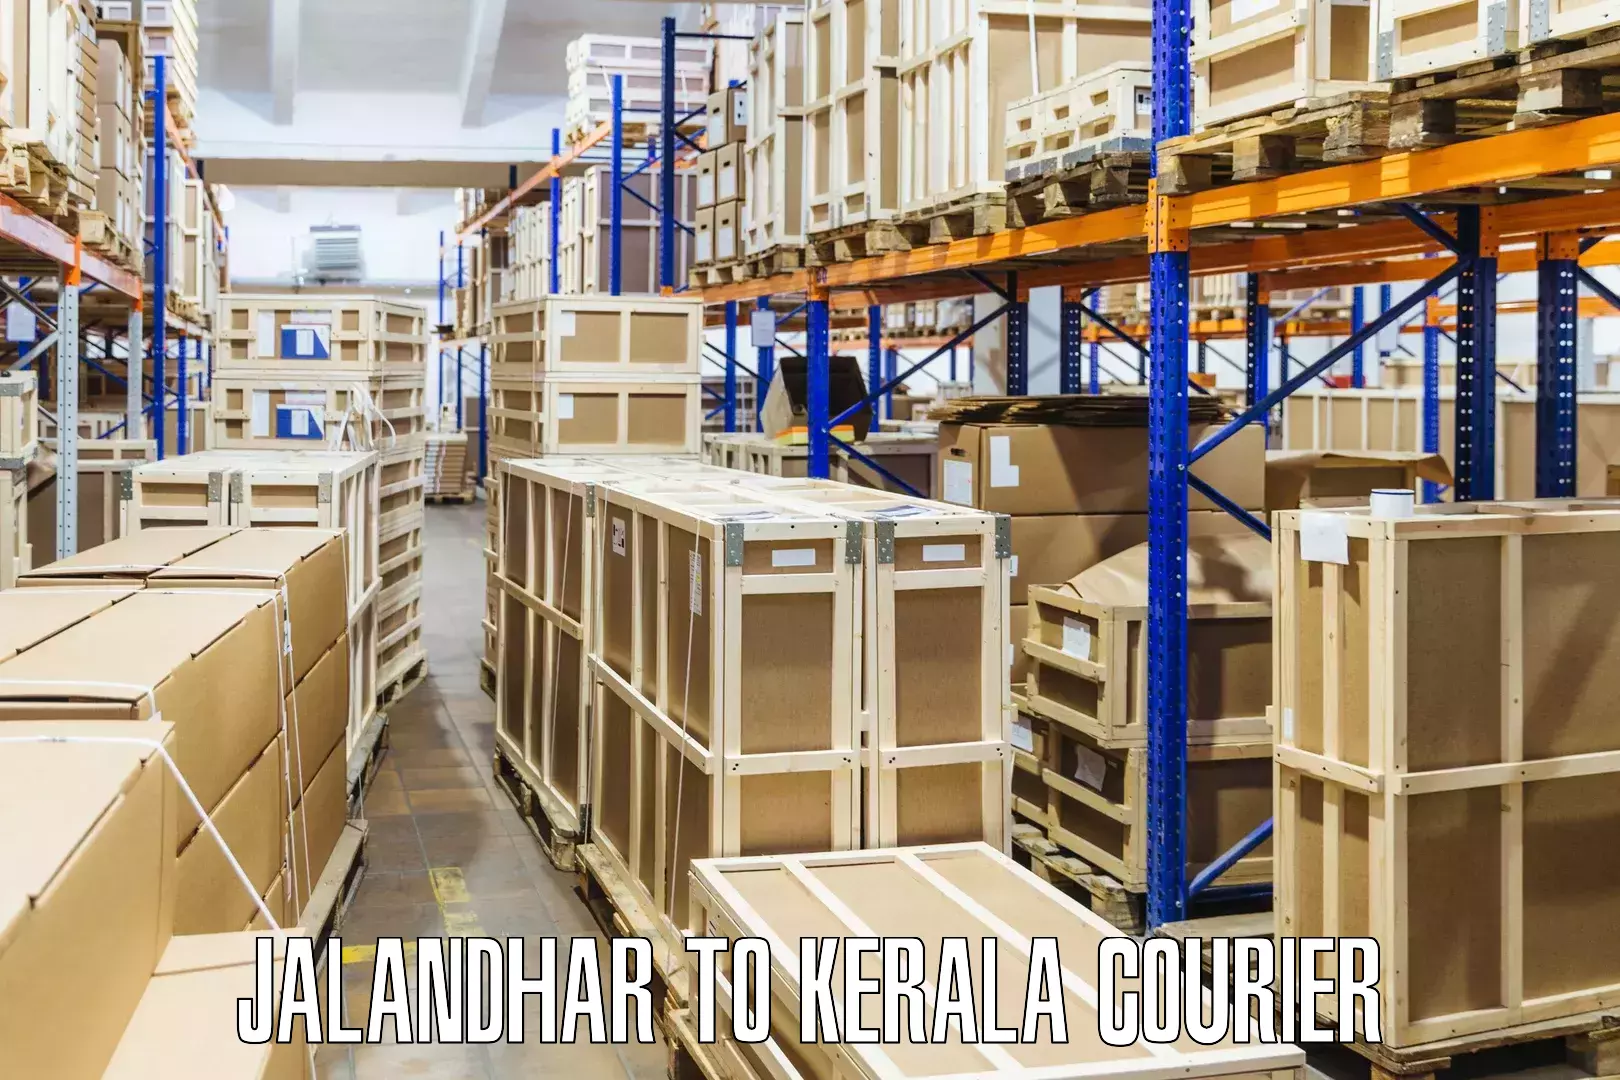 Tech-enabled shipping Jalandhar to Kerala